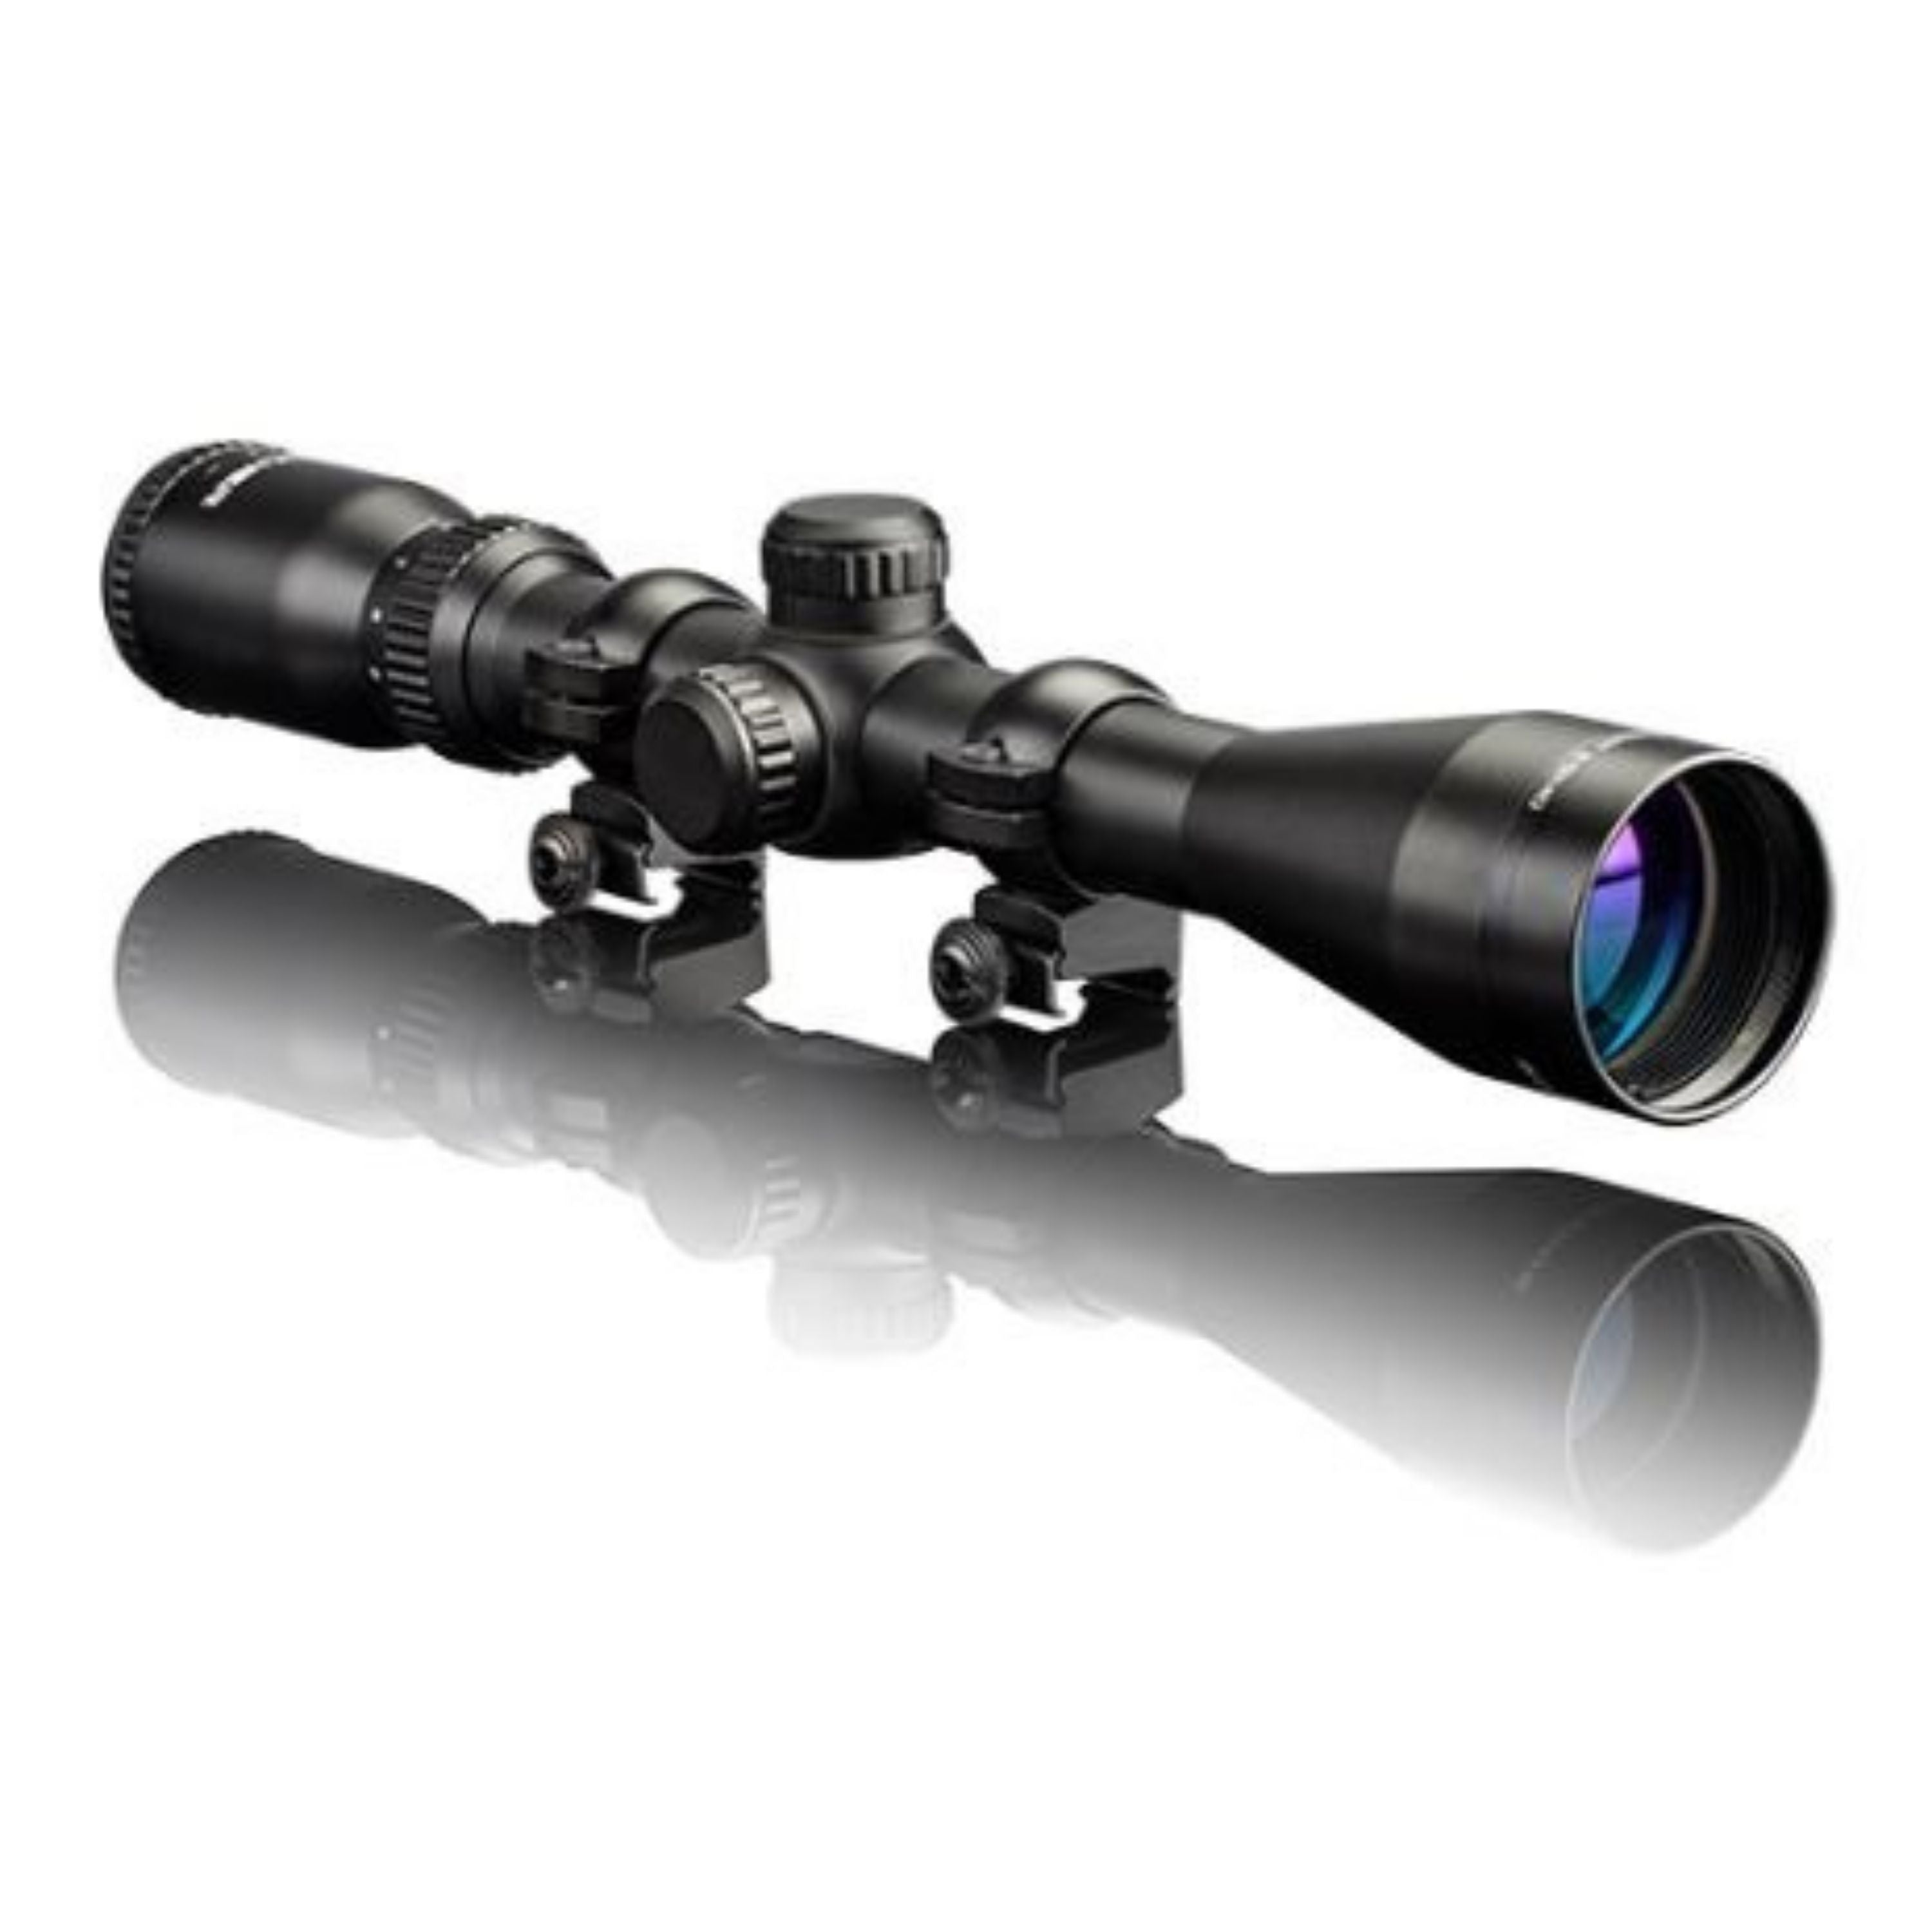 "Patriot" 3-9X40 R/M scope